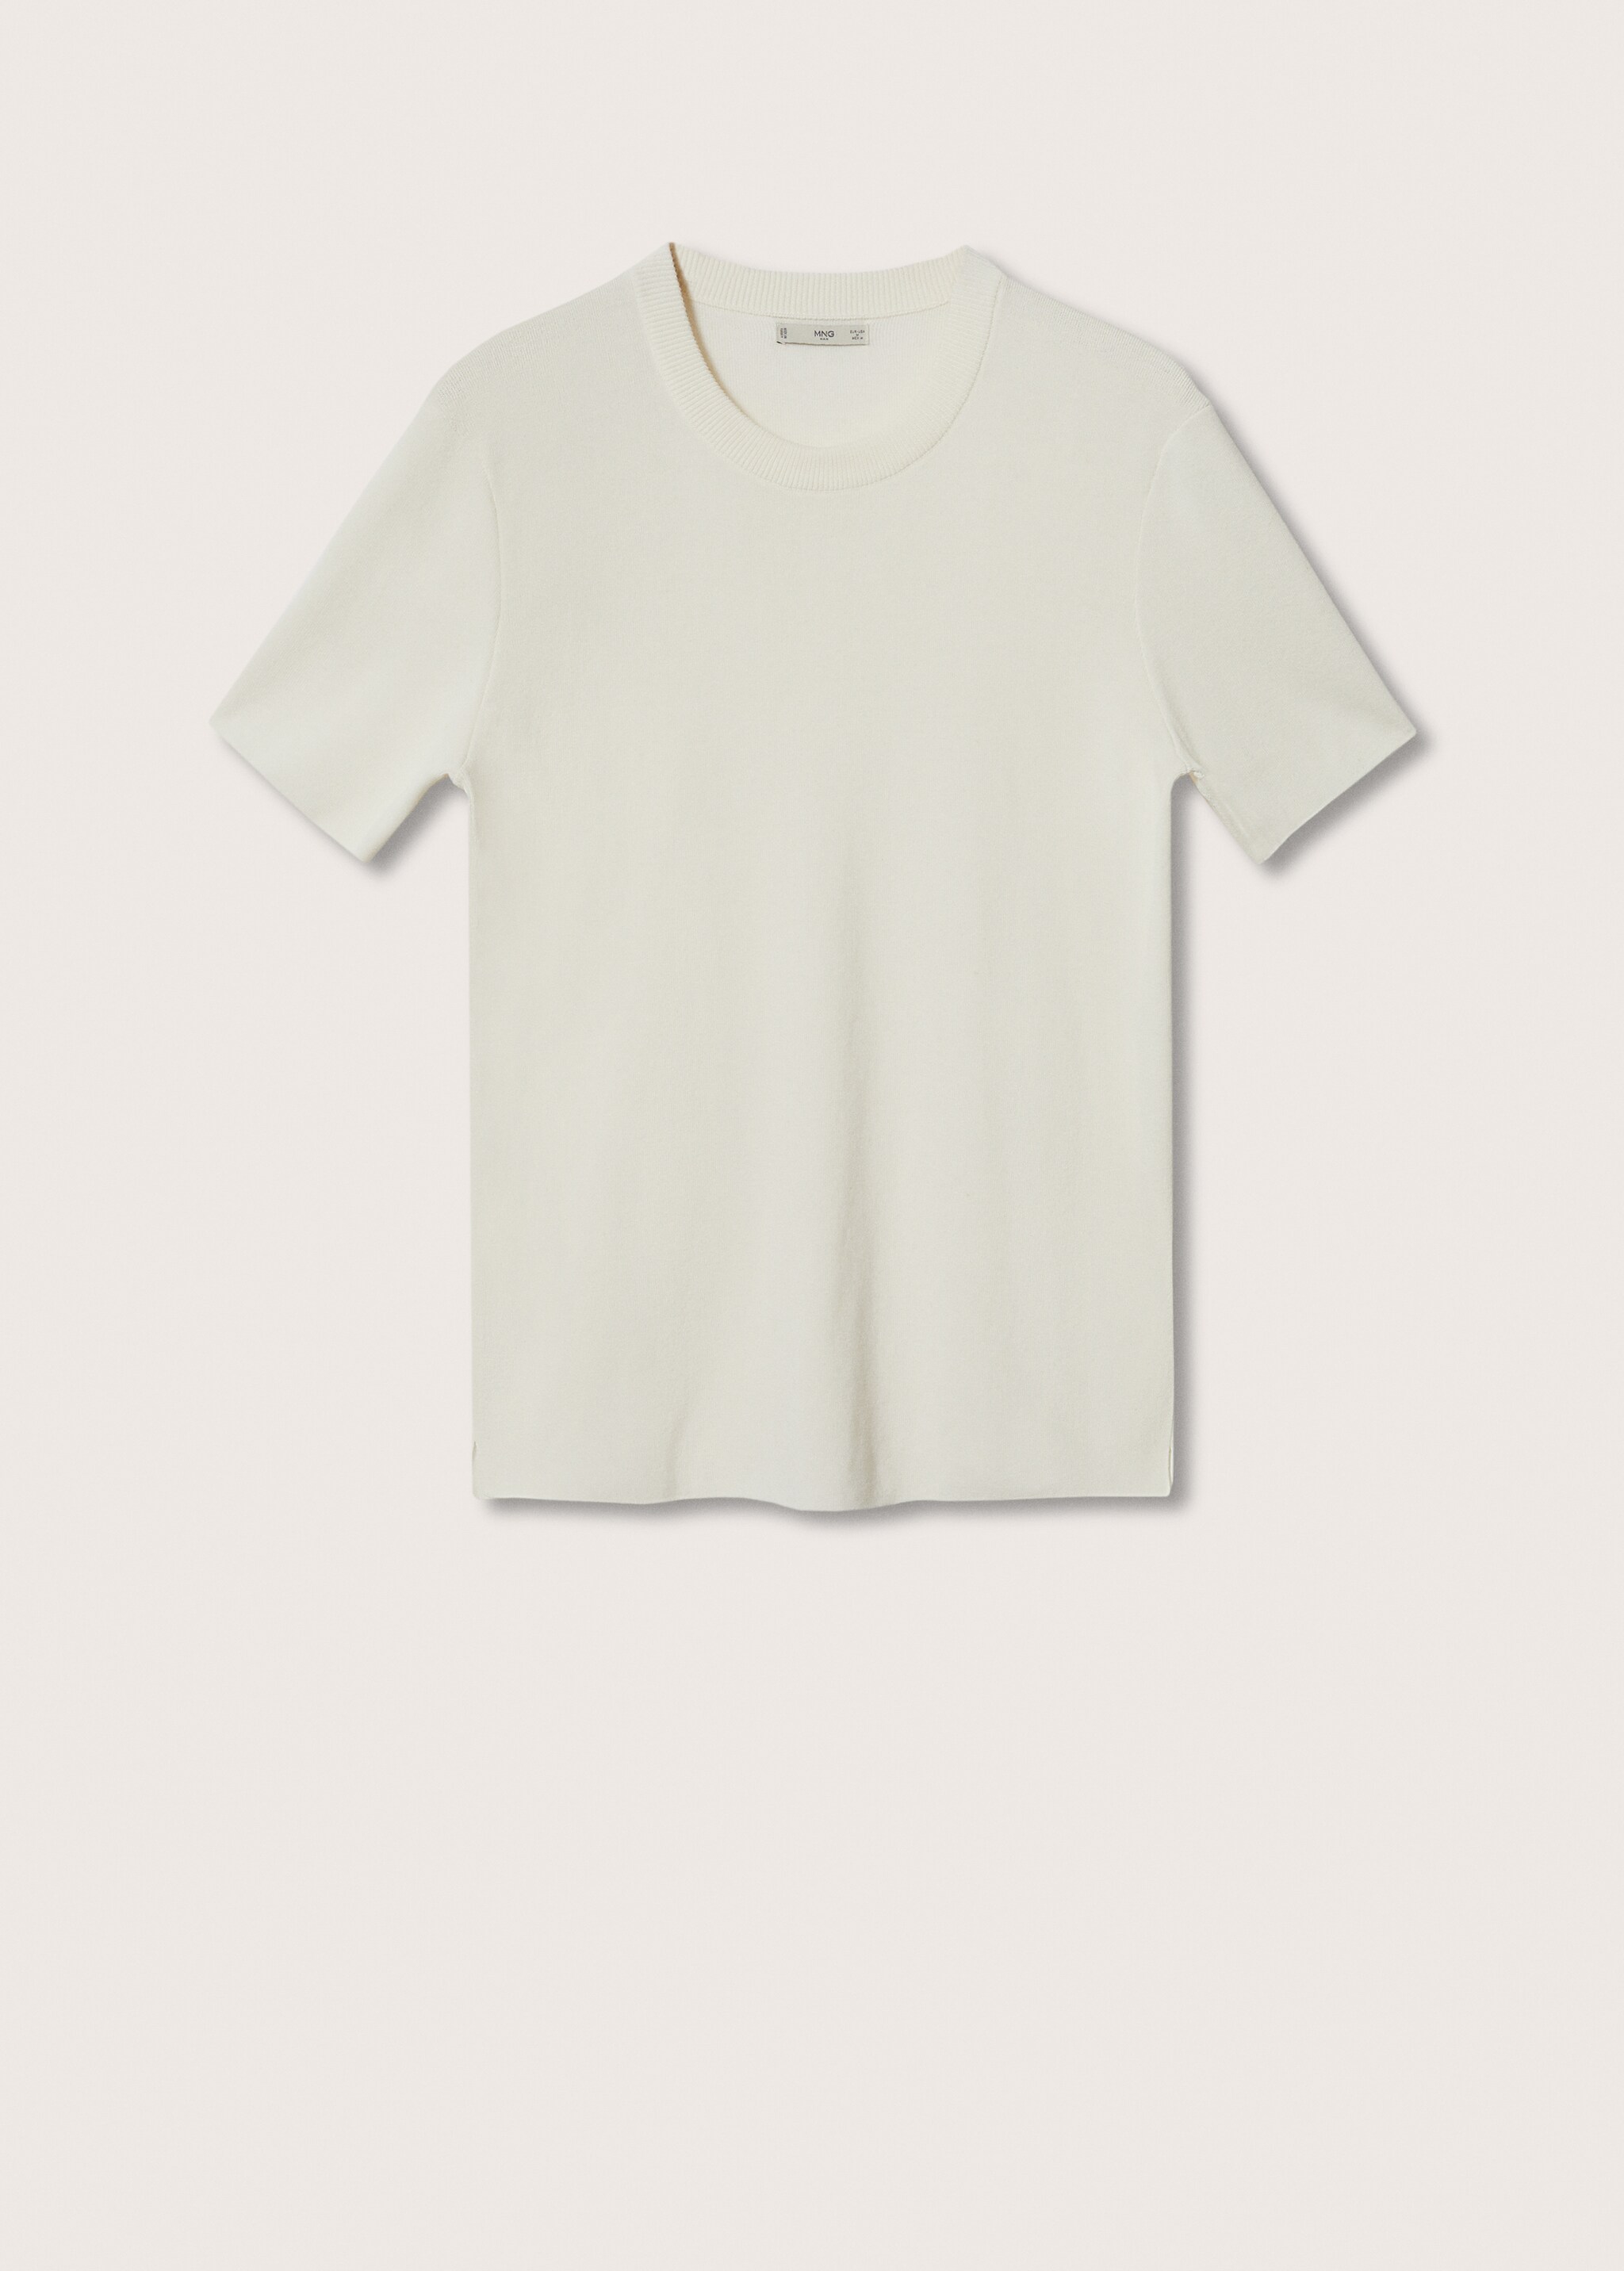 T-shirt coton lin - Article sans modèle